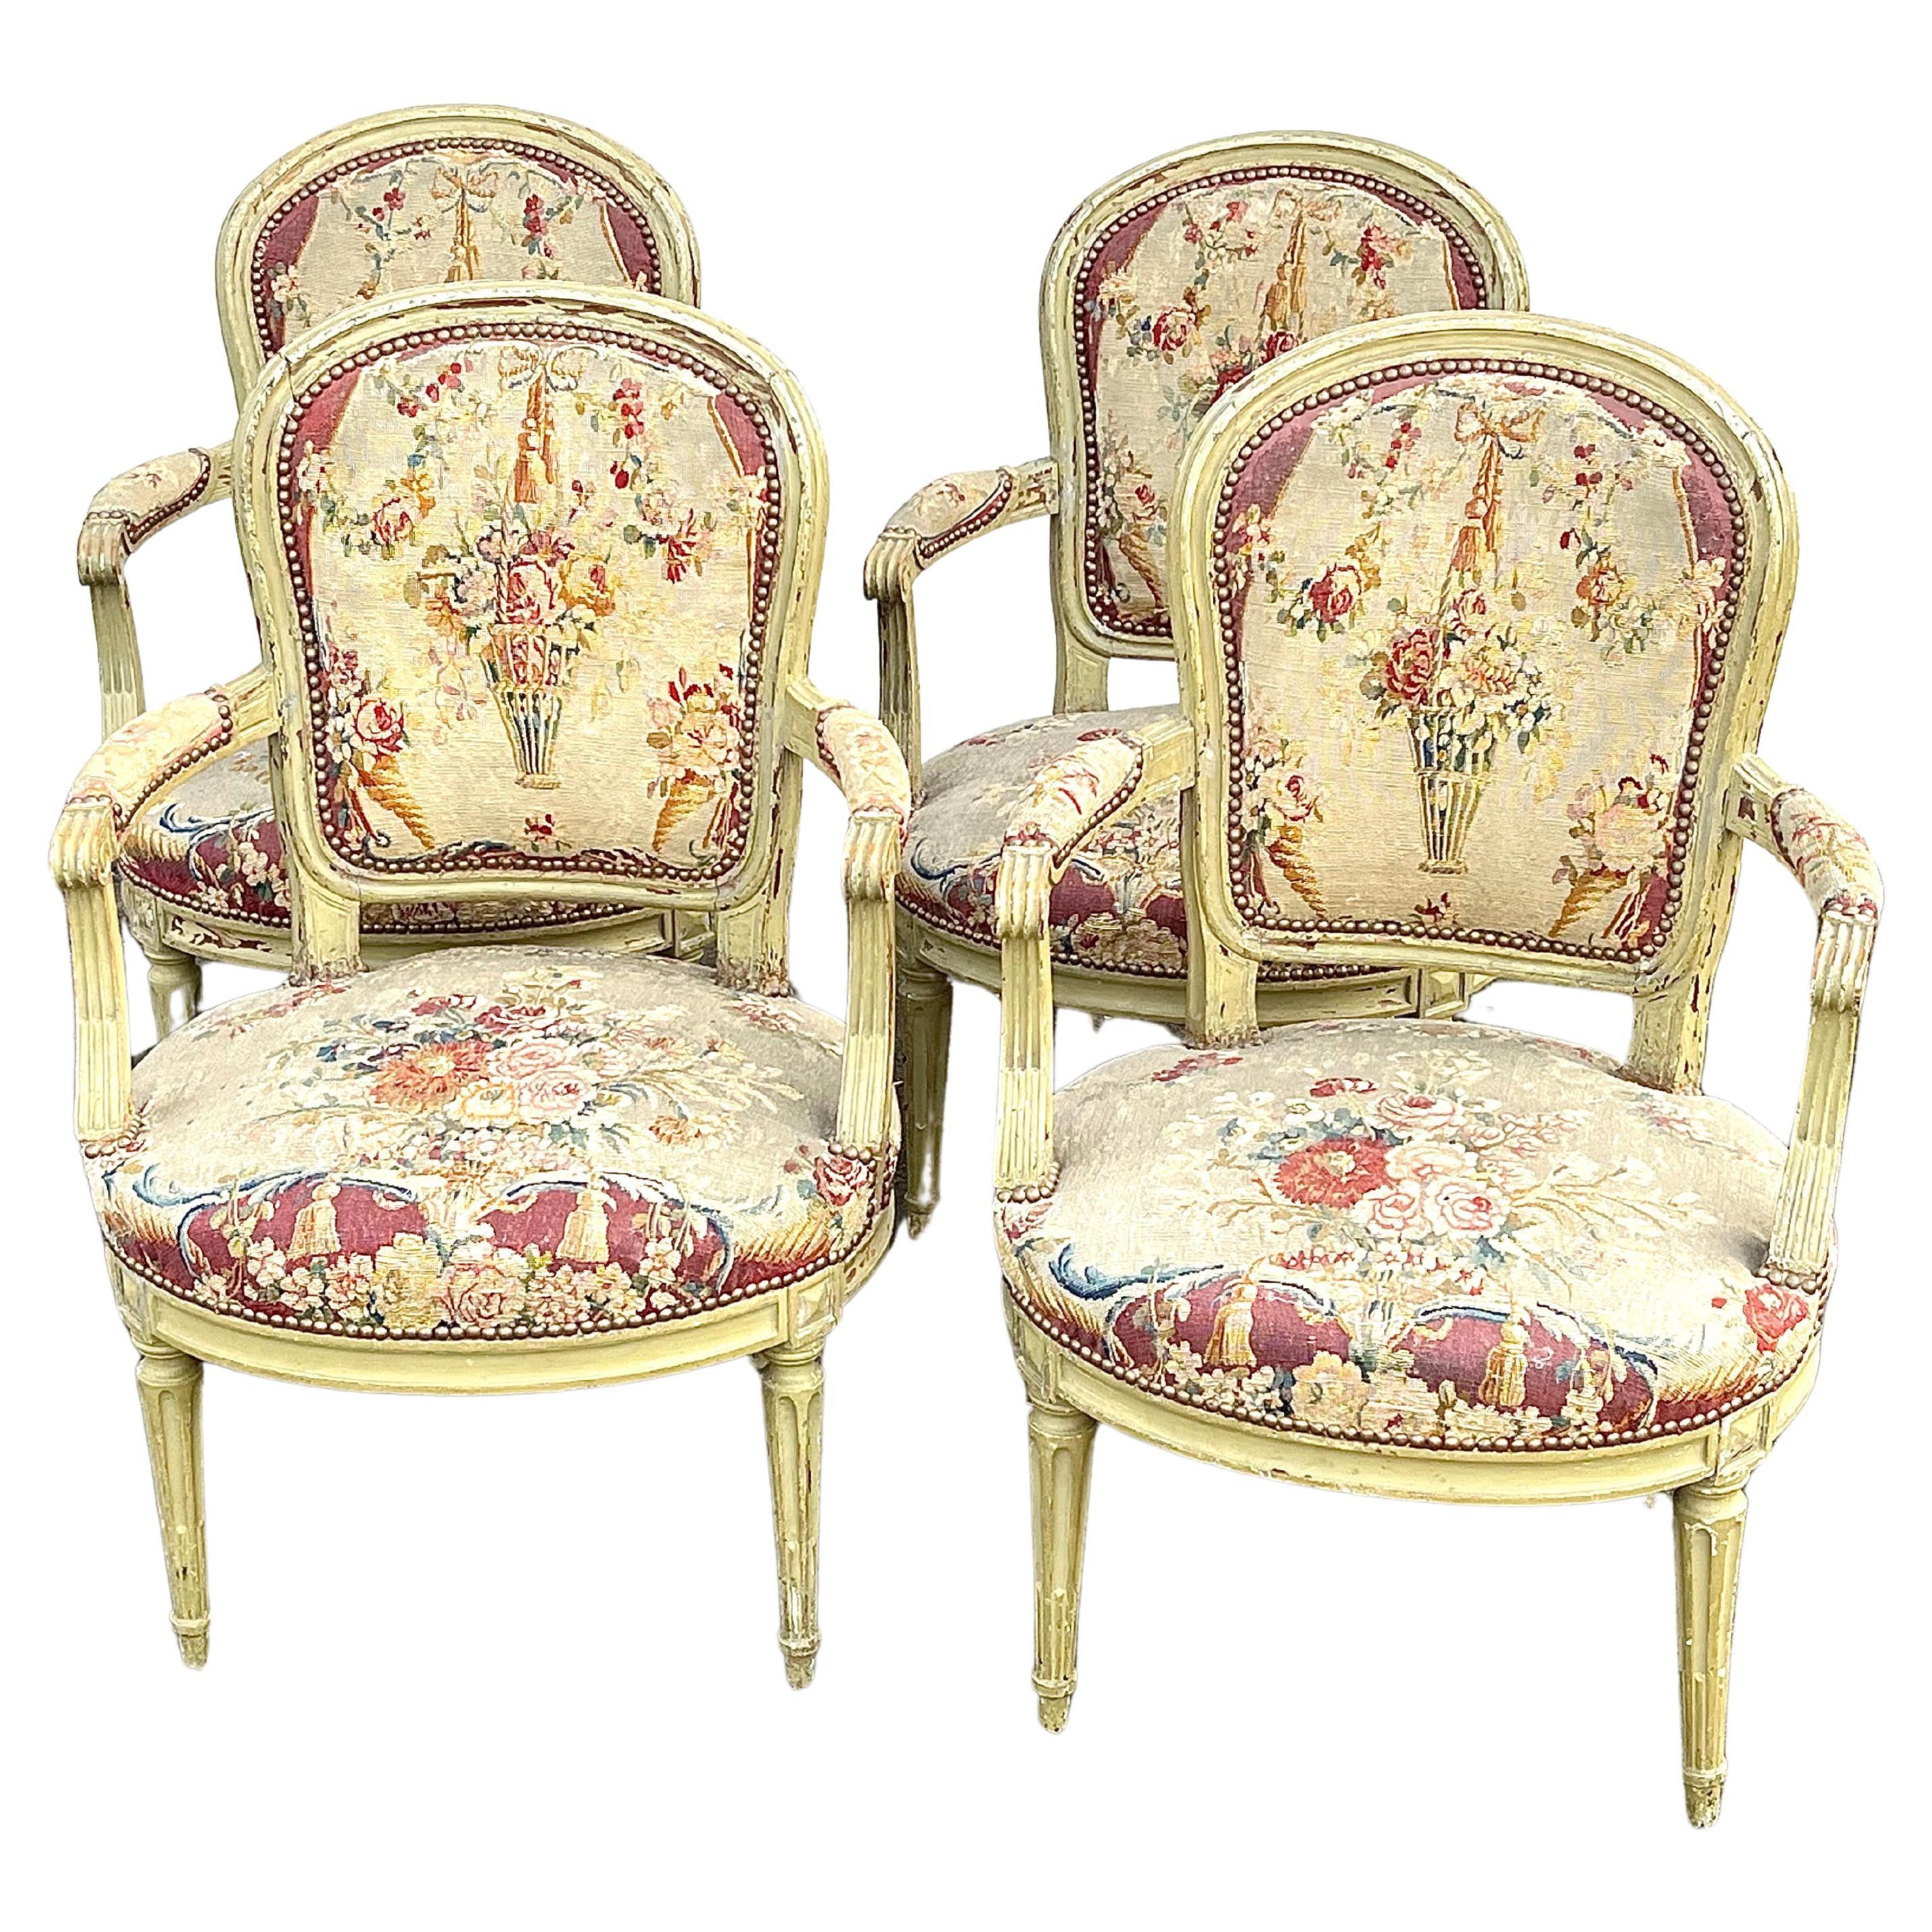 Un ensemble de 4 fauteuils d'époque Louis XVI en finition peinte verte d'origine, avec sièges et dossiers en tapisserie à l'aiguille du 18ème siècle, chaque chaise signée par le fabricant sur le châssis du siège 